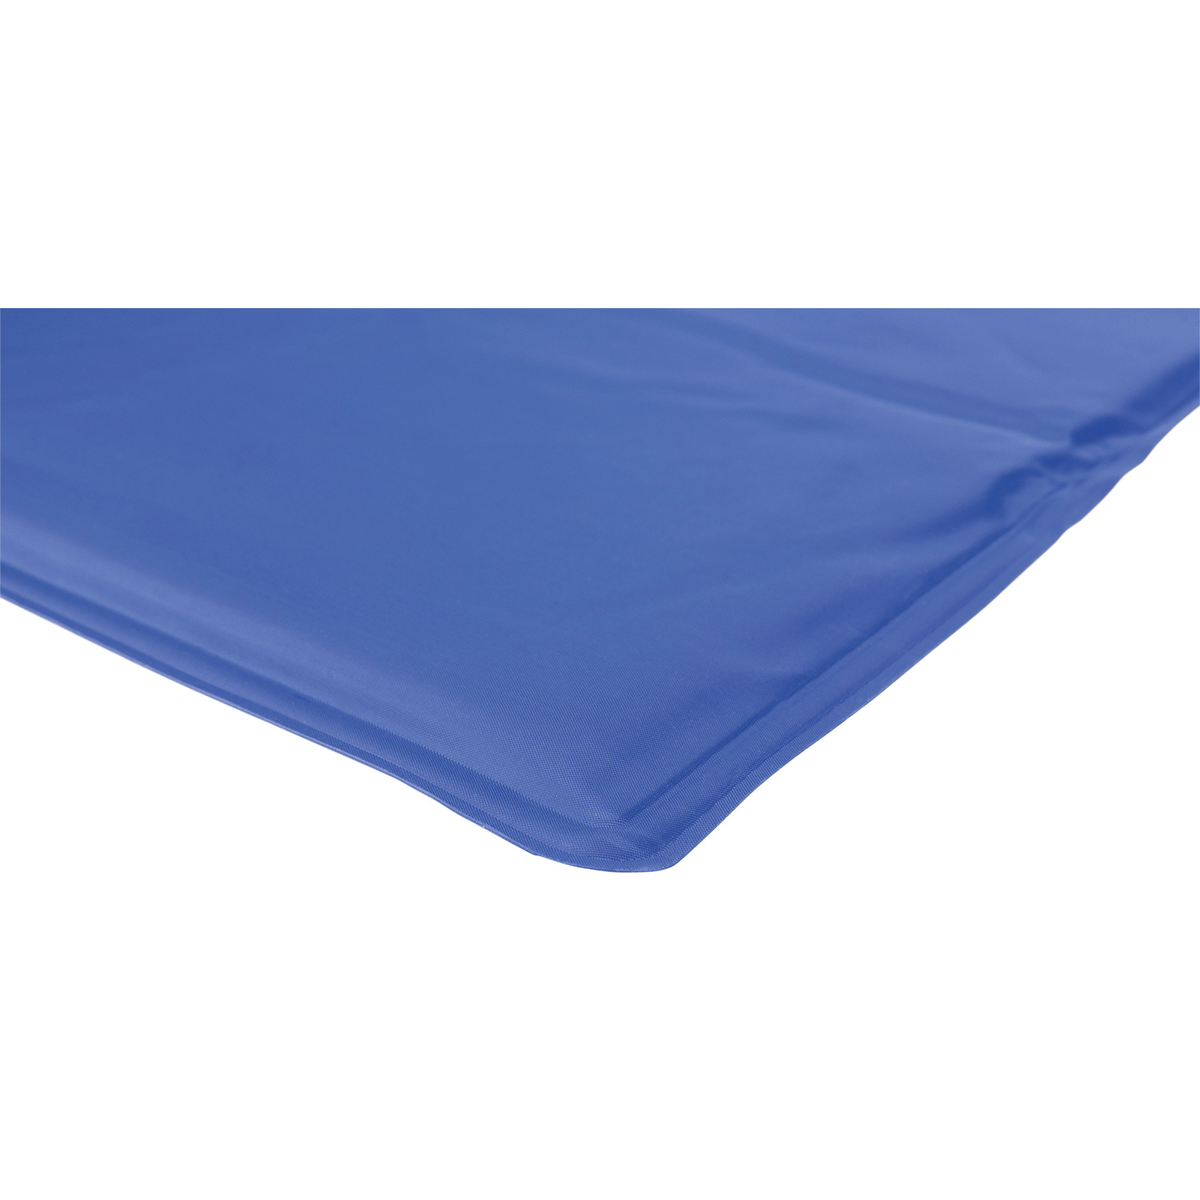 Trixie chladicí podložka, modrá, 100 × 60 cm